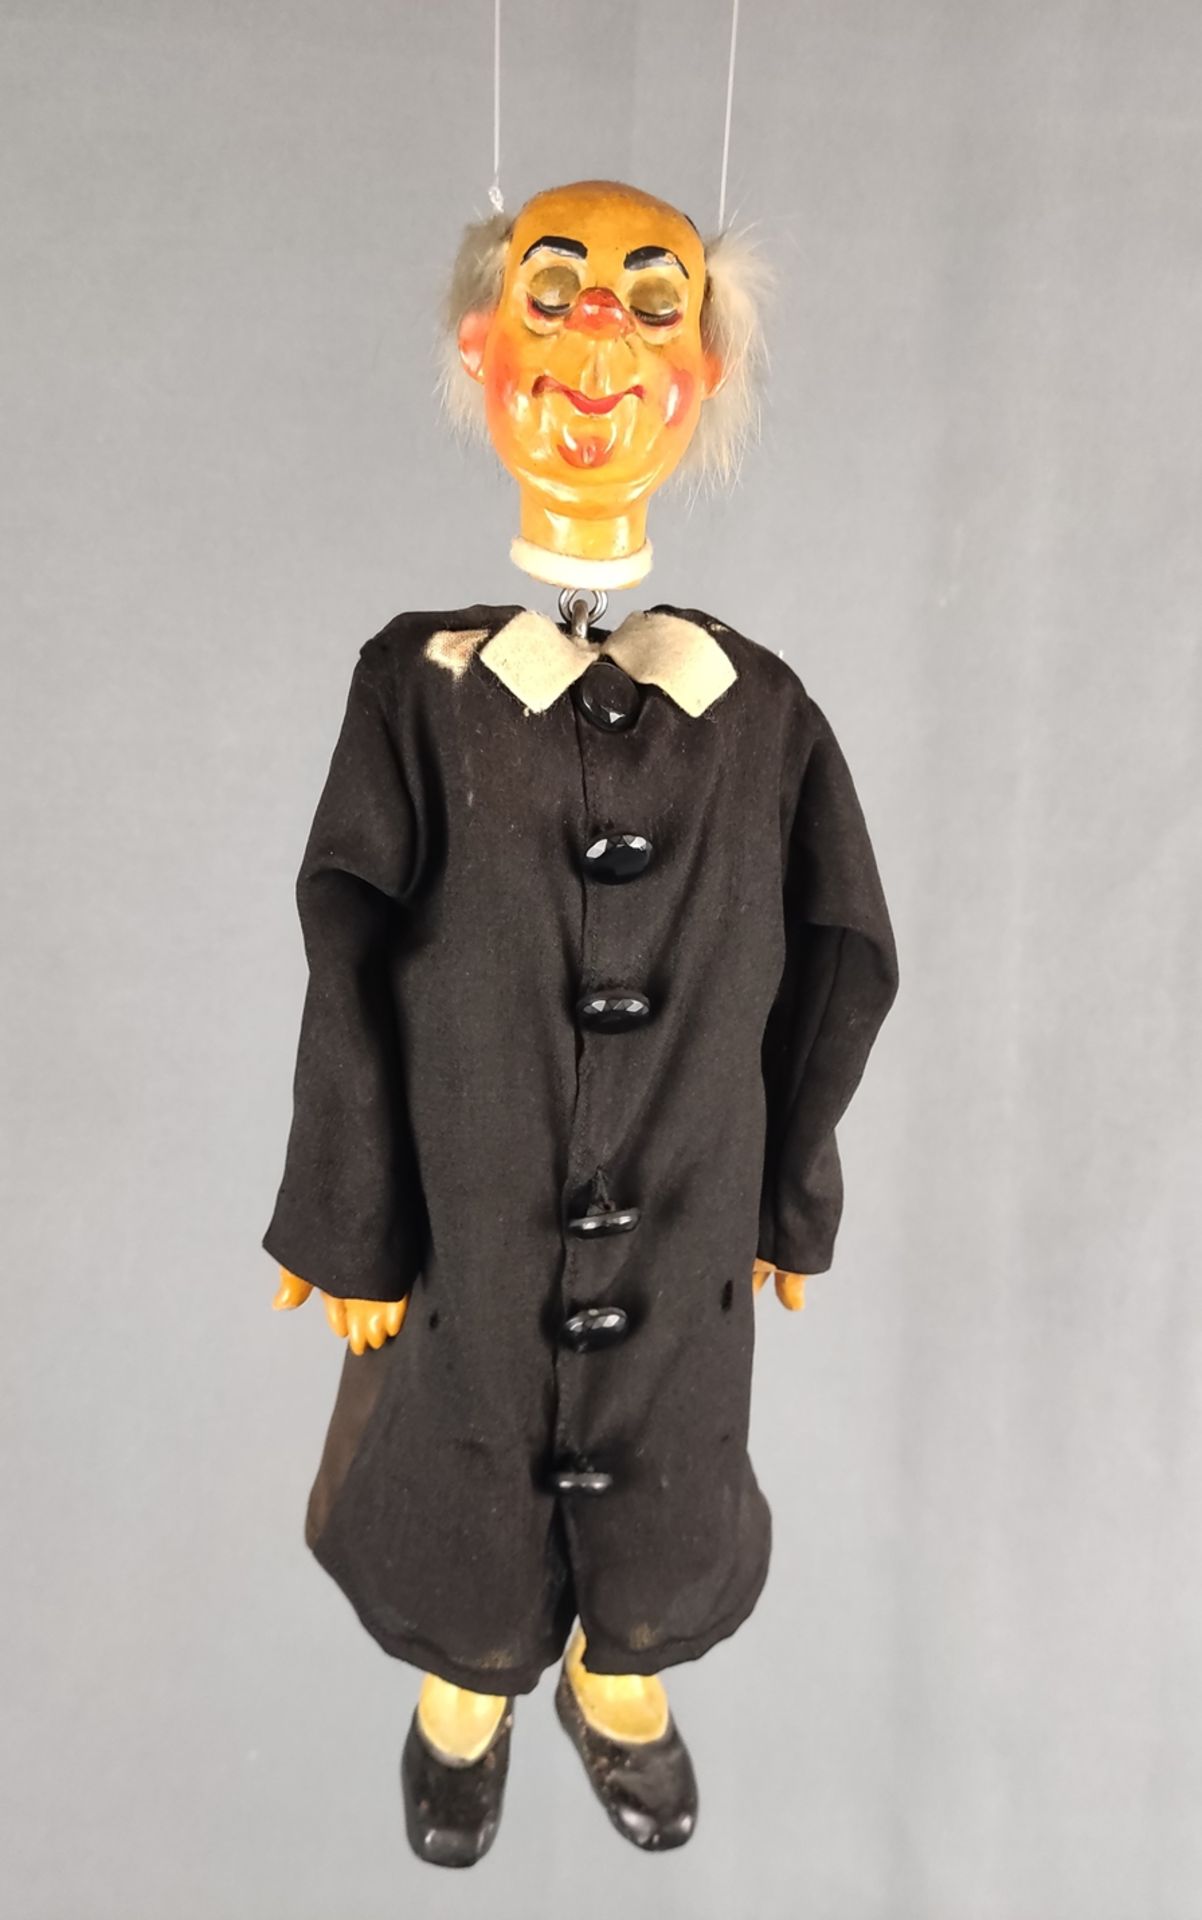 Puppe aus dem Puppentheater "Priester", polychrom bemalte Keramik, grauer Haarkranz aus Kaninchenfe